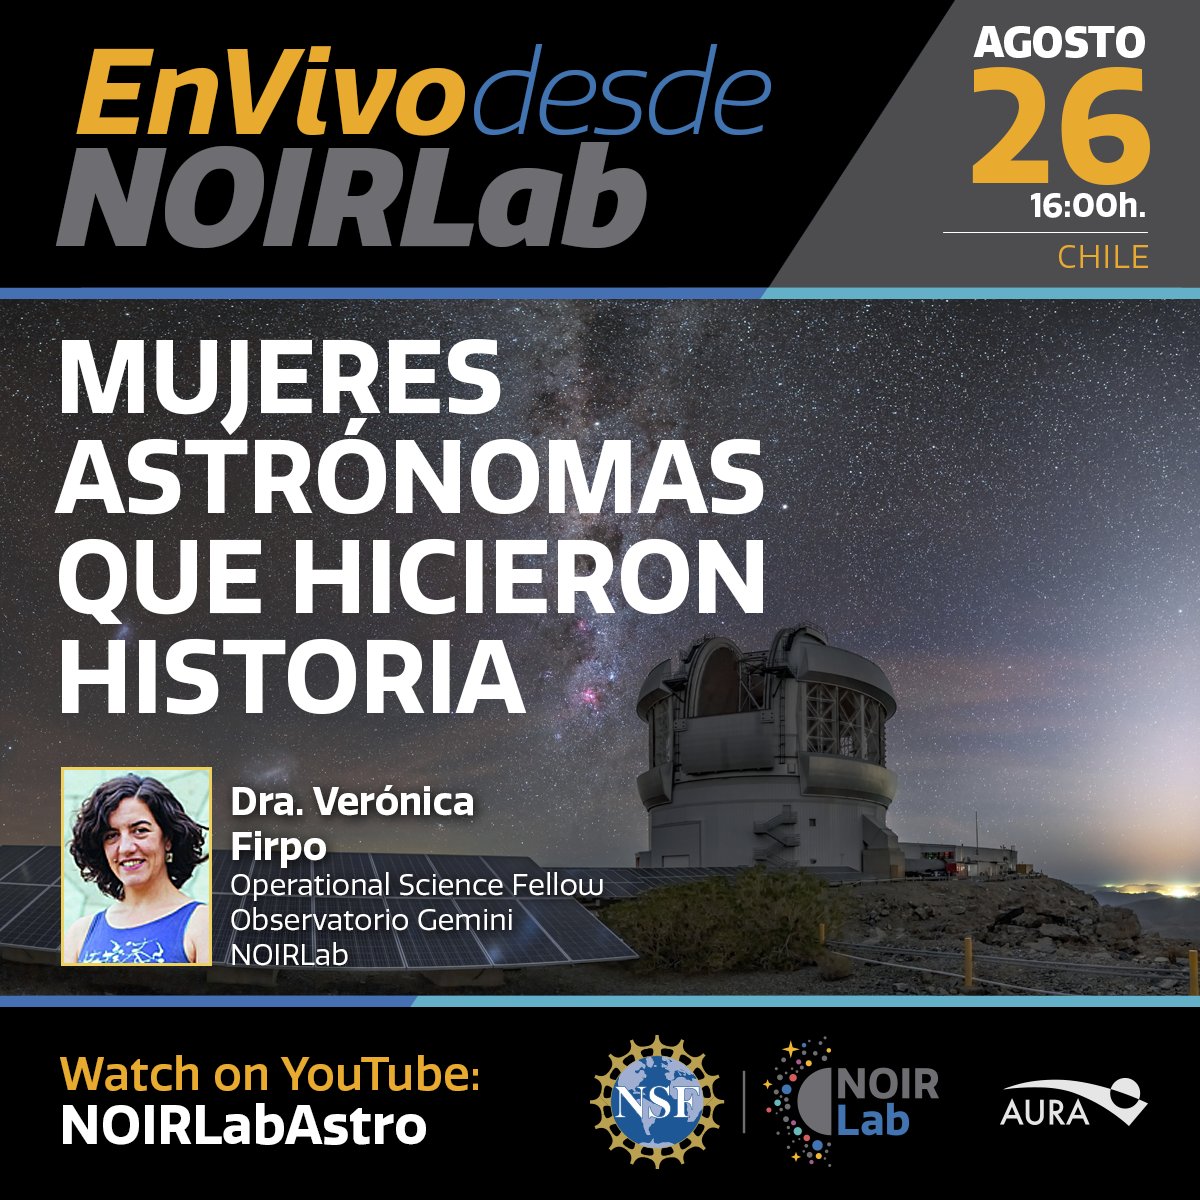 Les invitamos a la charla de Verónica Firpo acerca de importantes mujeres que son parte de la historia de astronomía en el mundo.  La cita es el miércoles 26 de agosto a las 16 horas de Chile, en ow.ly/dn0l50B85zp
#DescubiendoJuntos #EnVivoDesdeNOIRLab #MujeresEnAstronomía